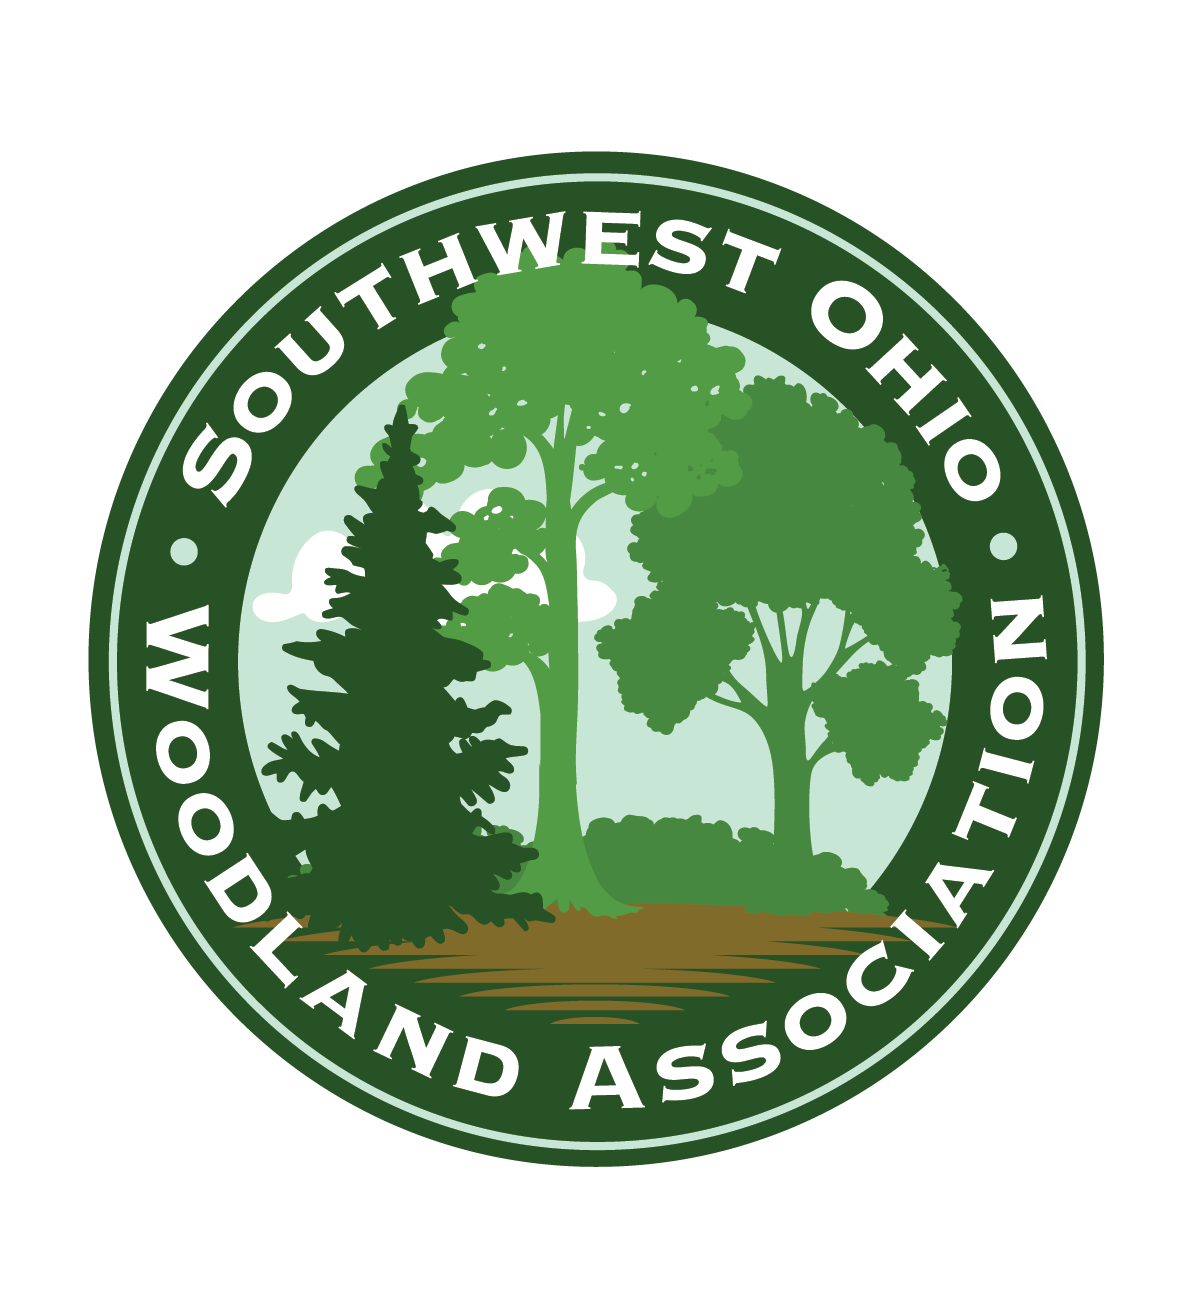 southwest ohio woodland association